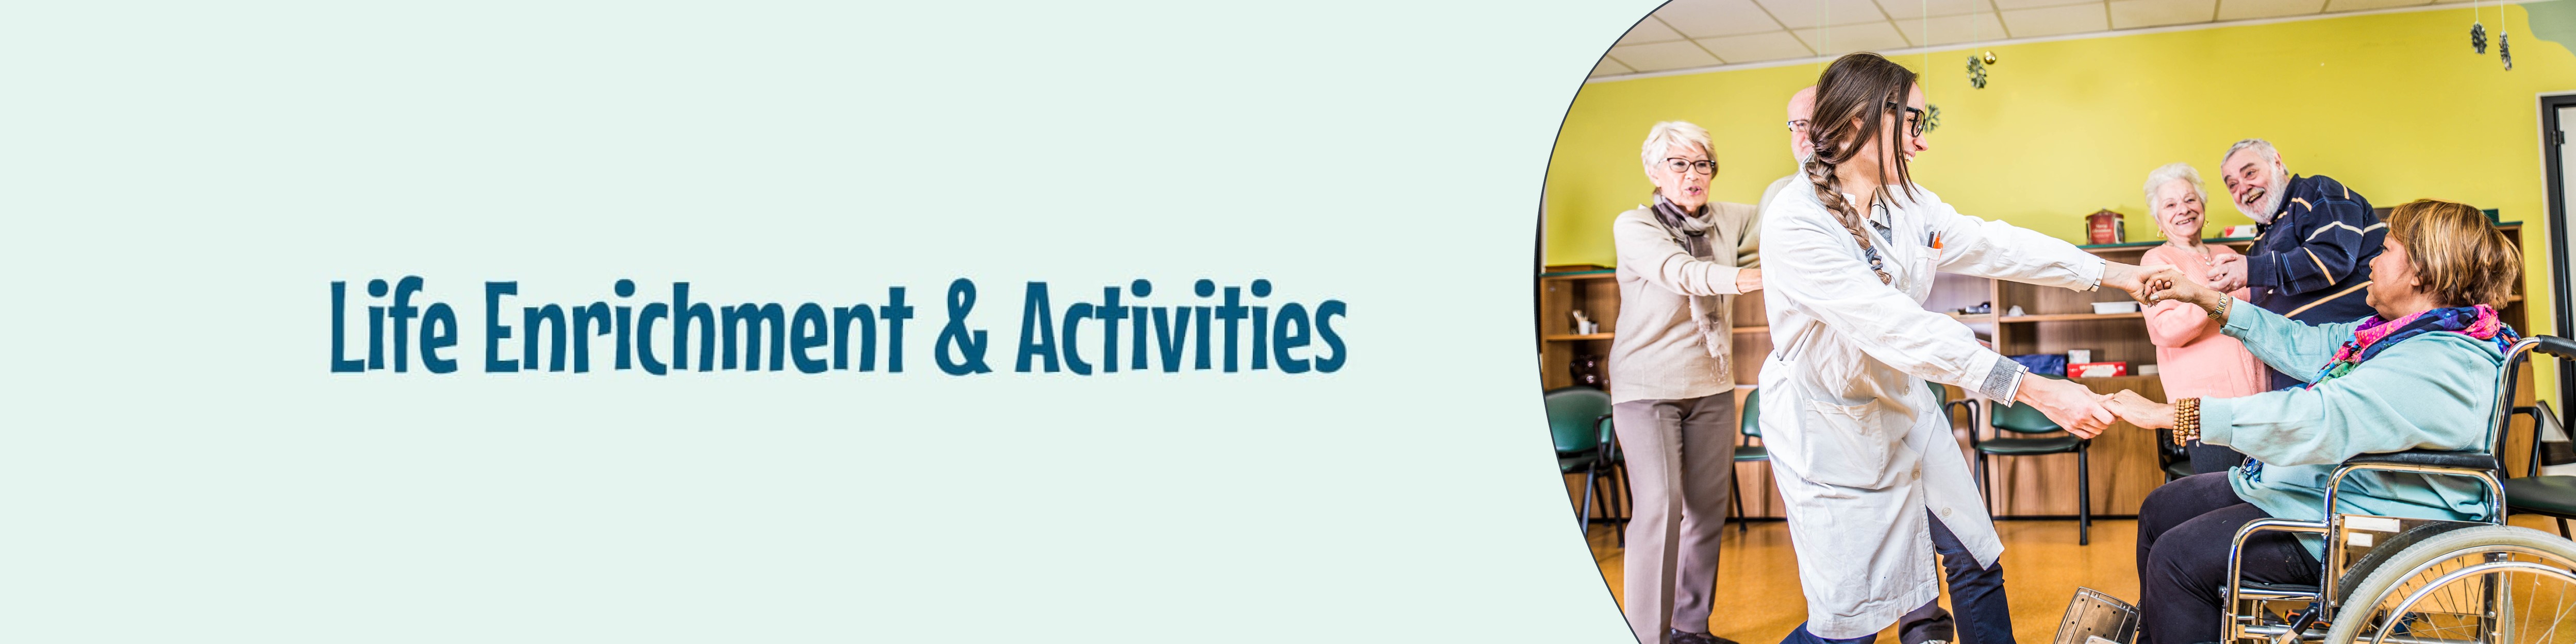 Activities- new headers